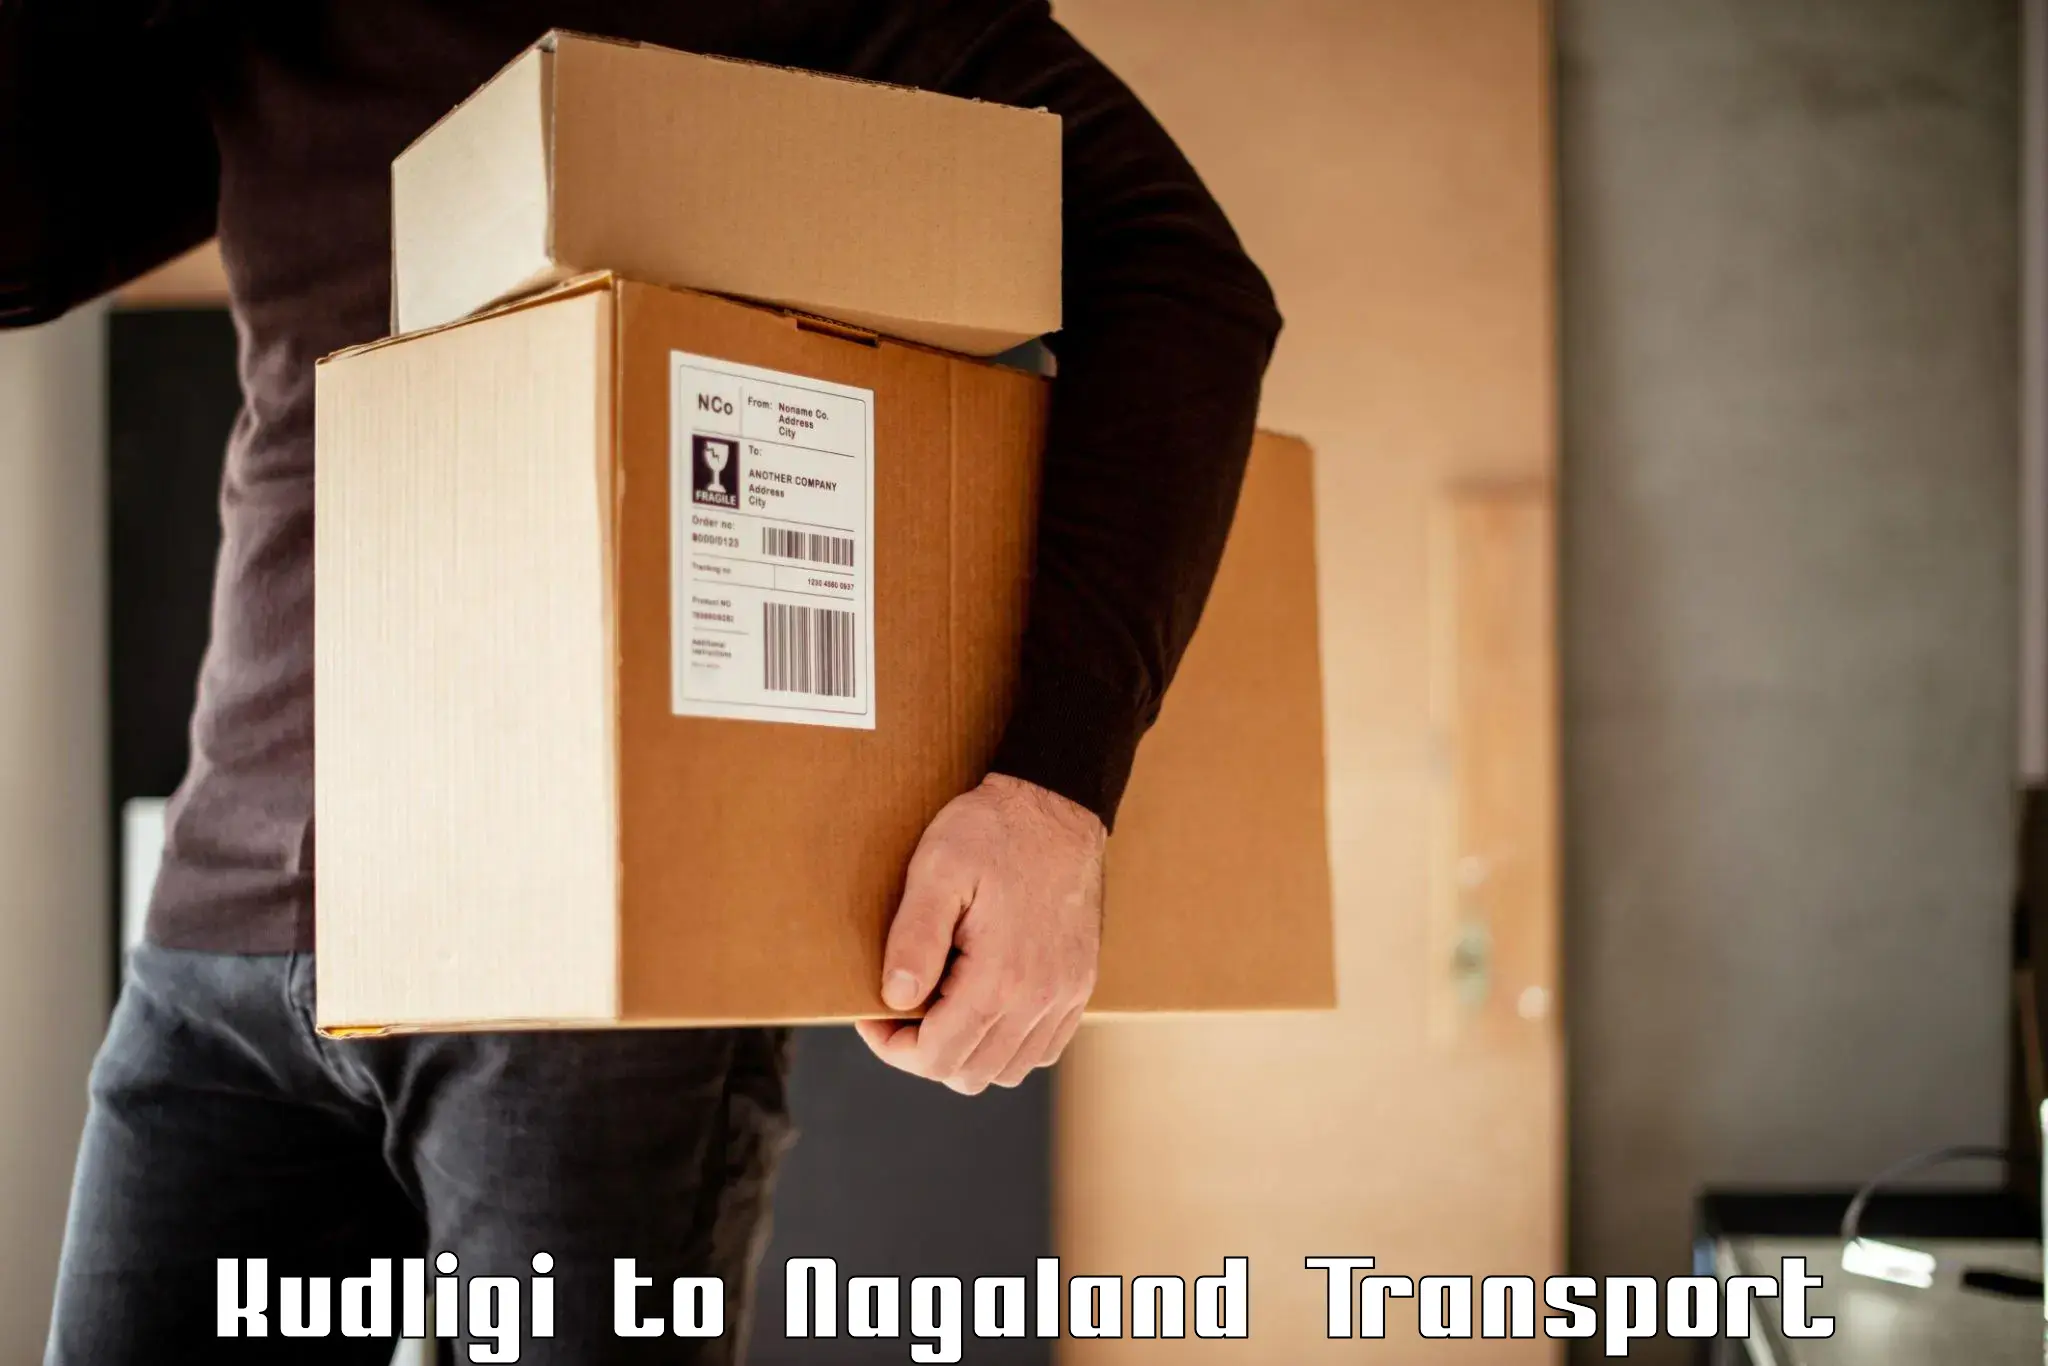 Cargo transportation services Kudligi to Longleng